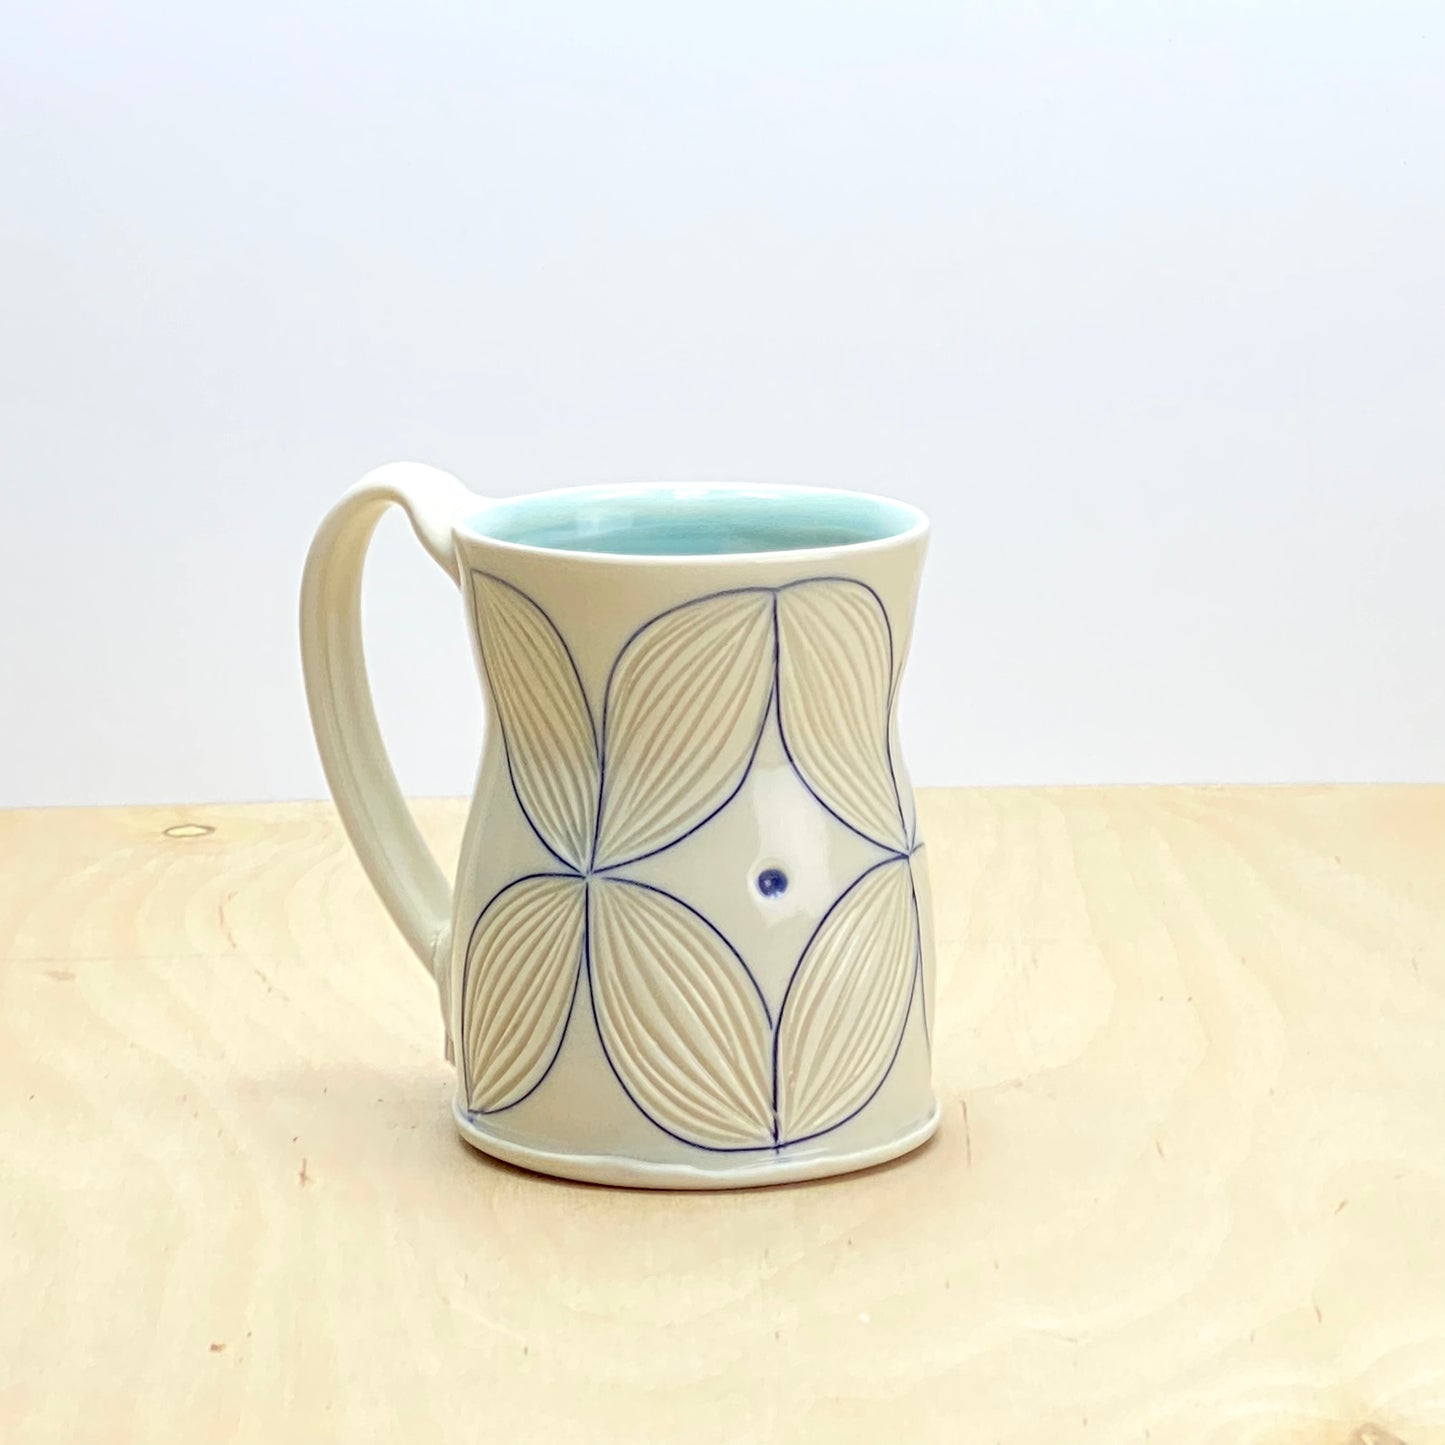 Mug with Pattern